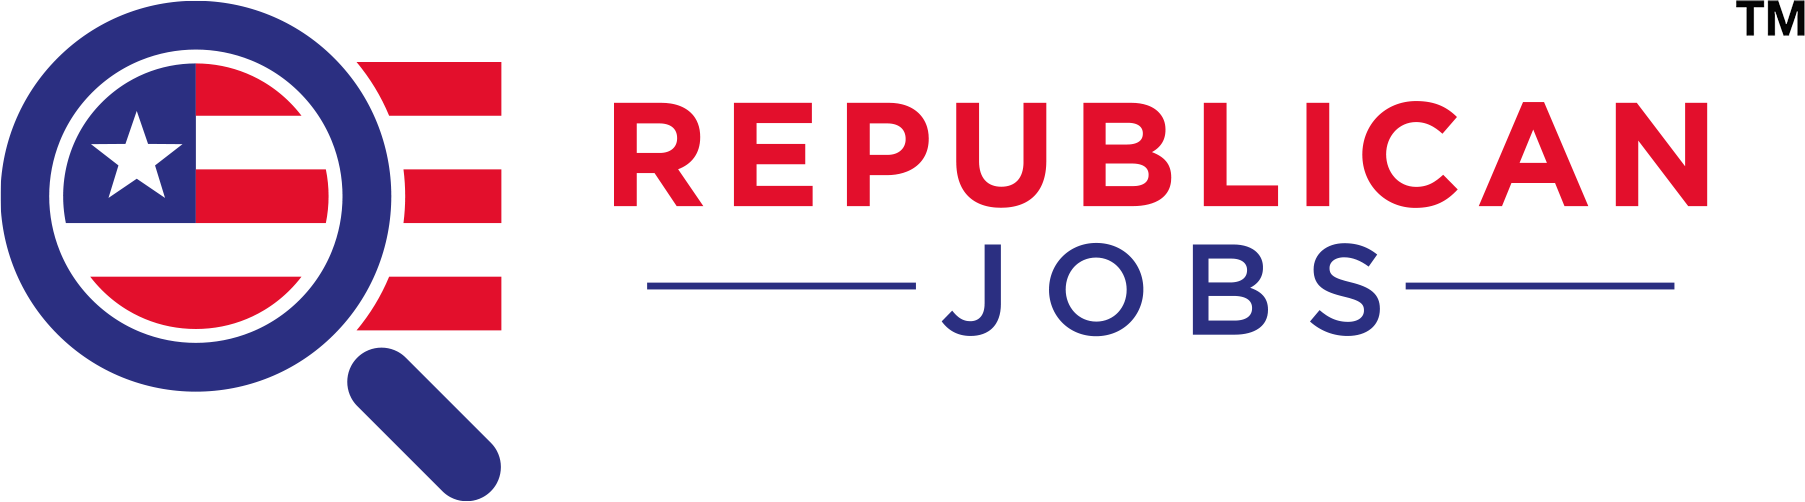 Republican jobs in Bloomington Illinois jobs